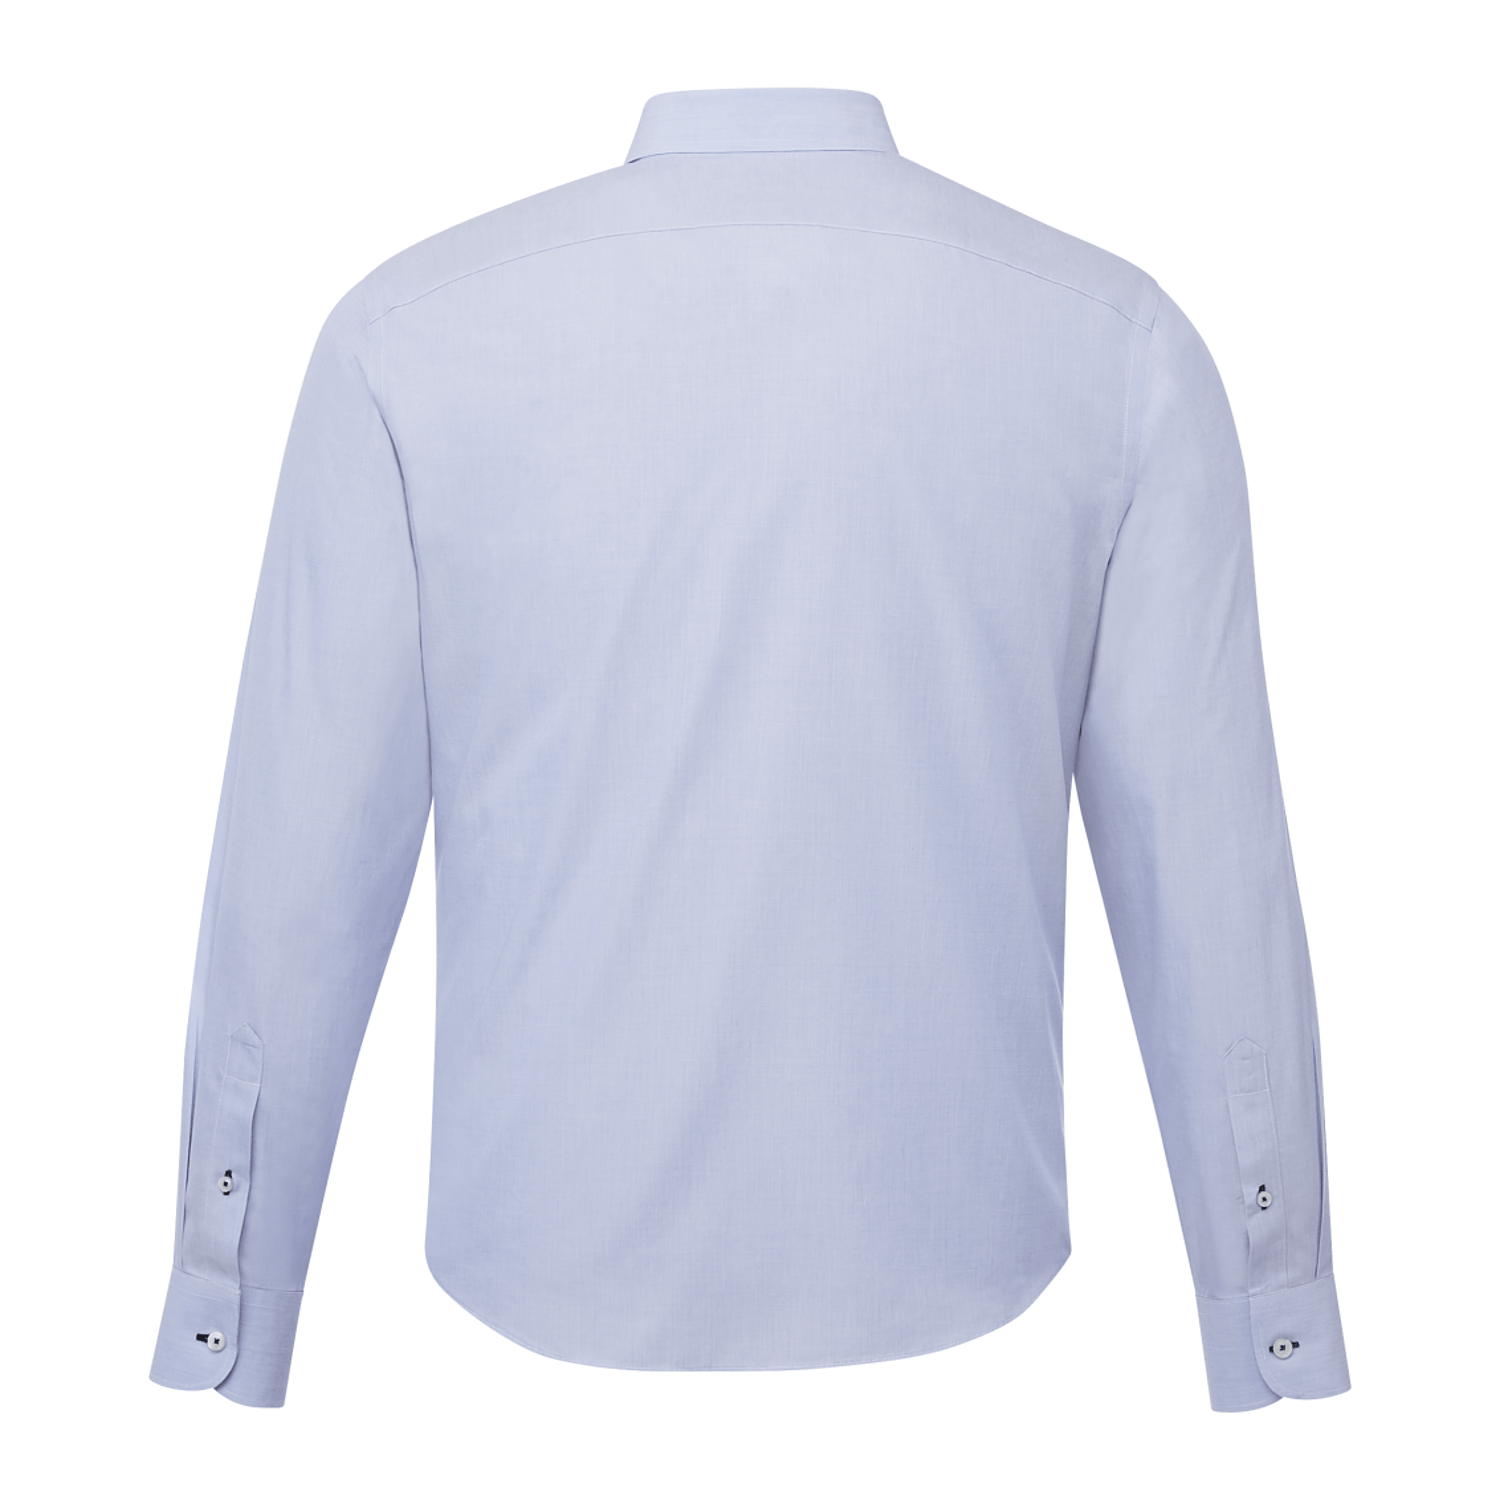 Wrinkled Long Sleeved T-Shirt (Blue)